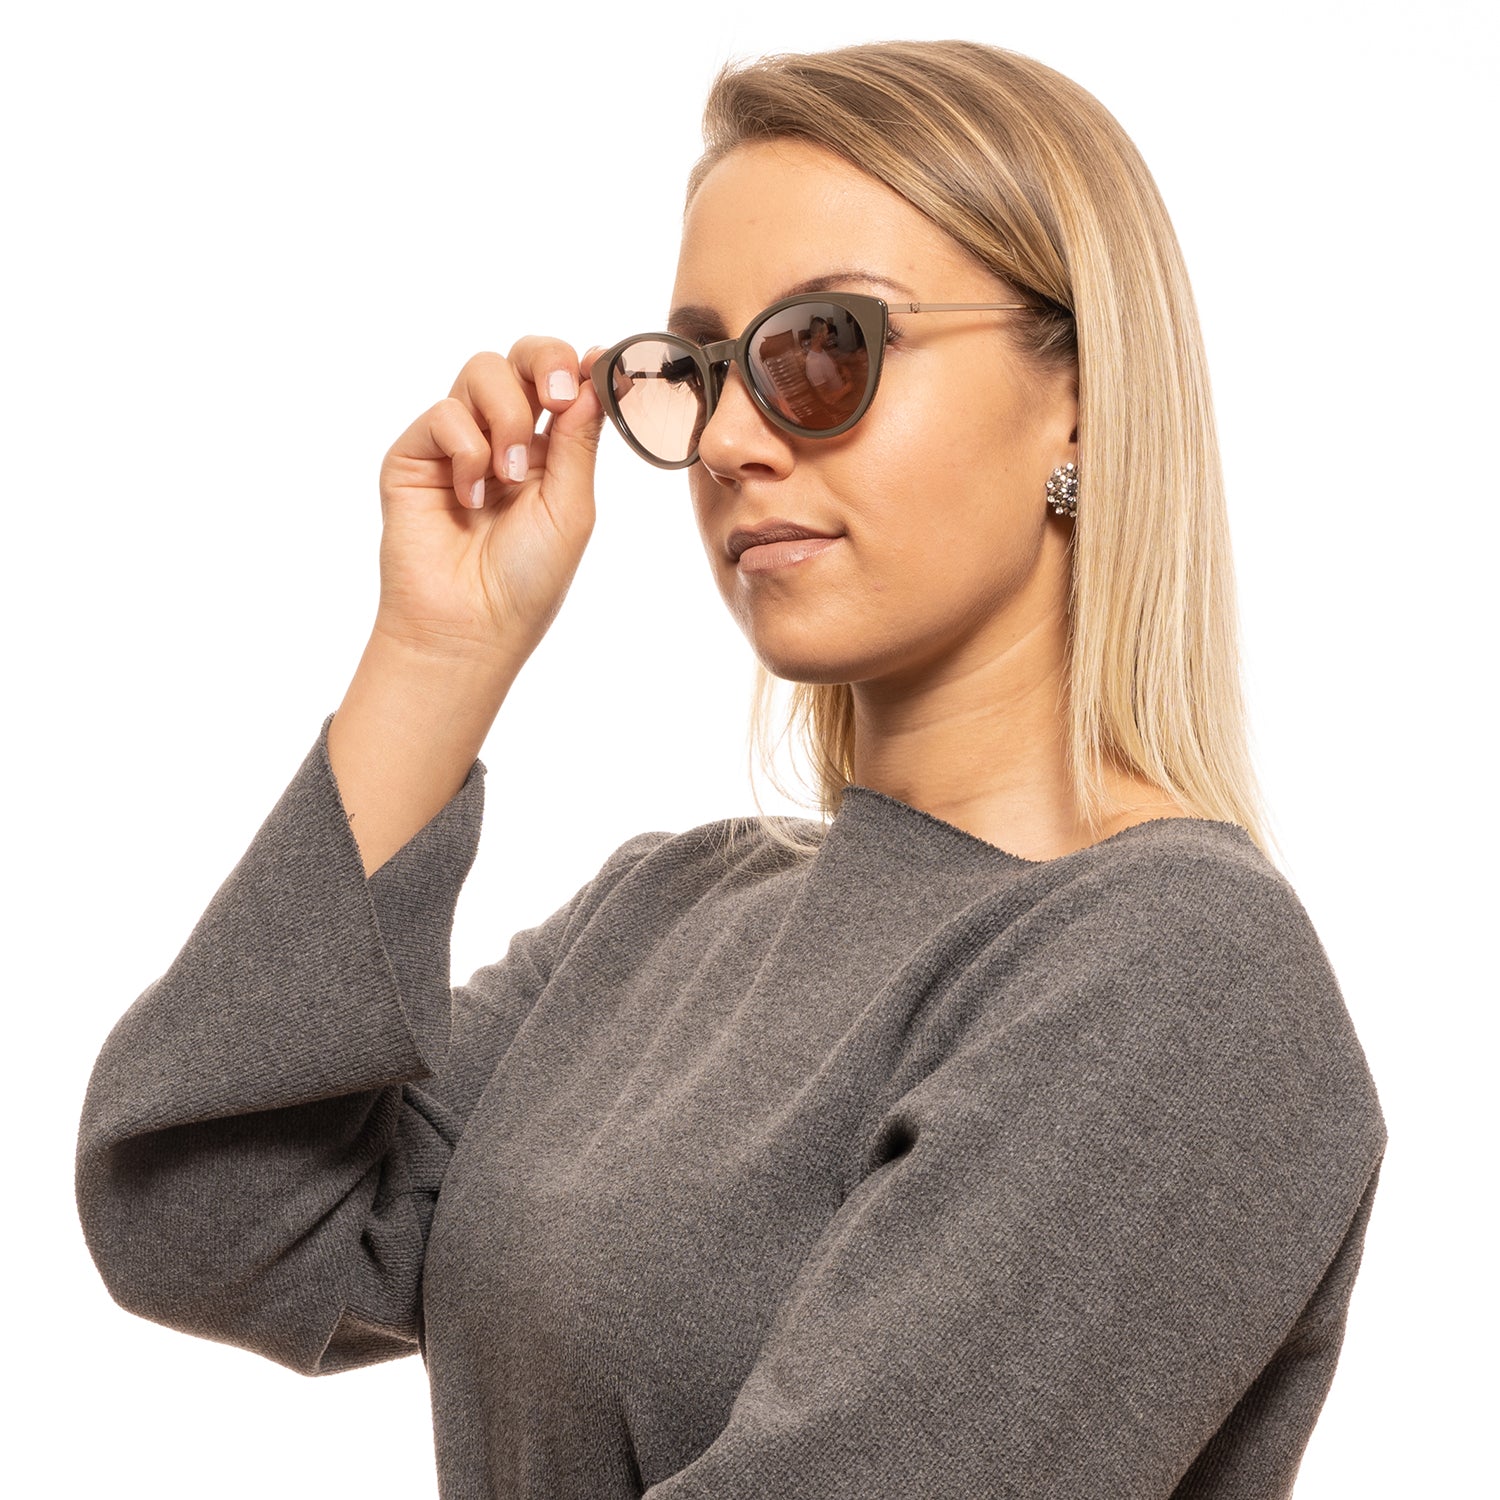 Olive Women Sunglasses